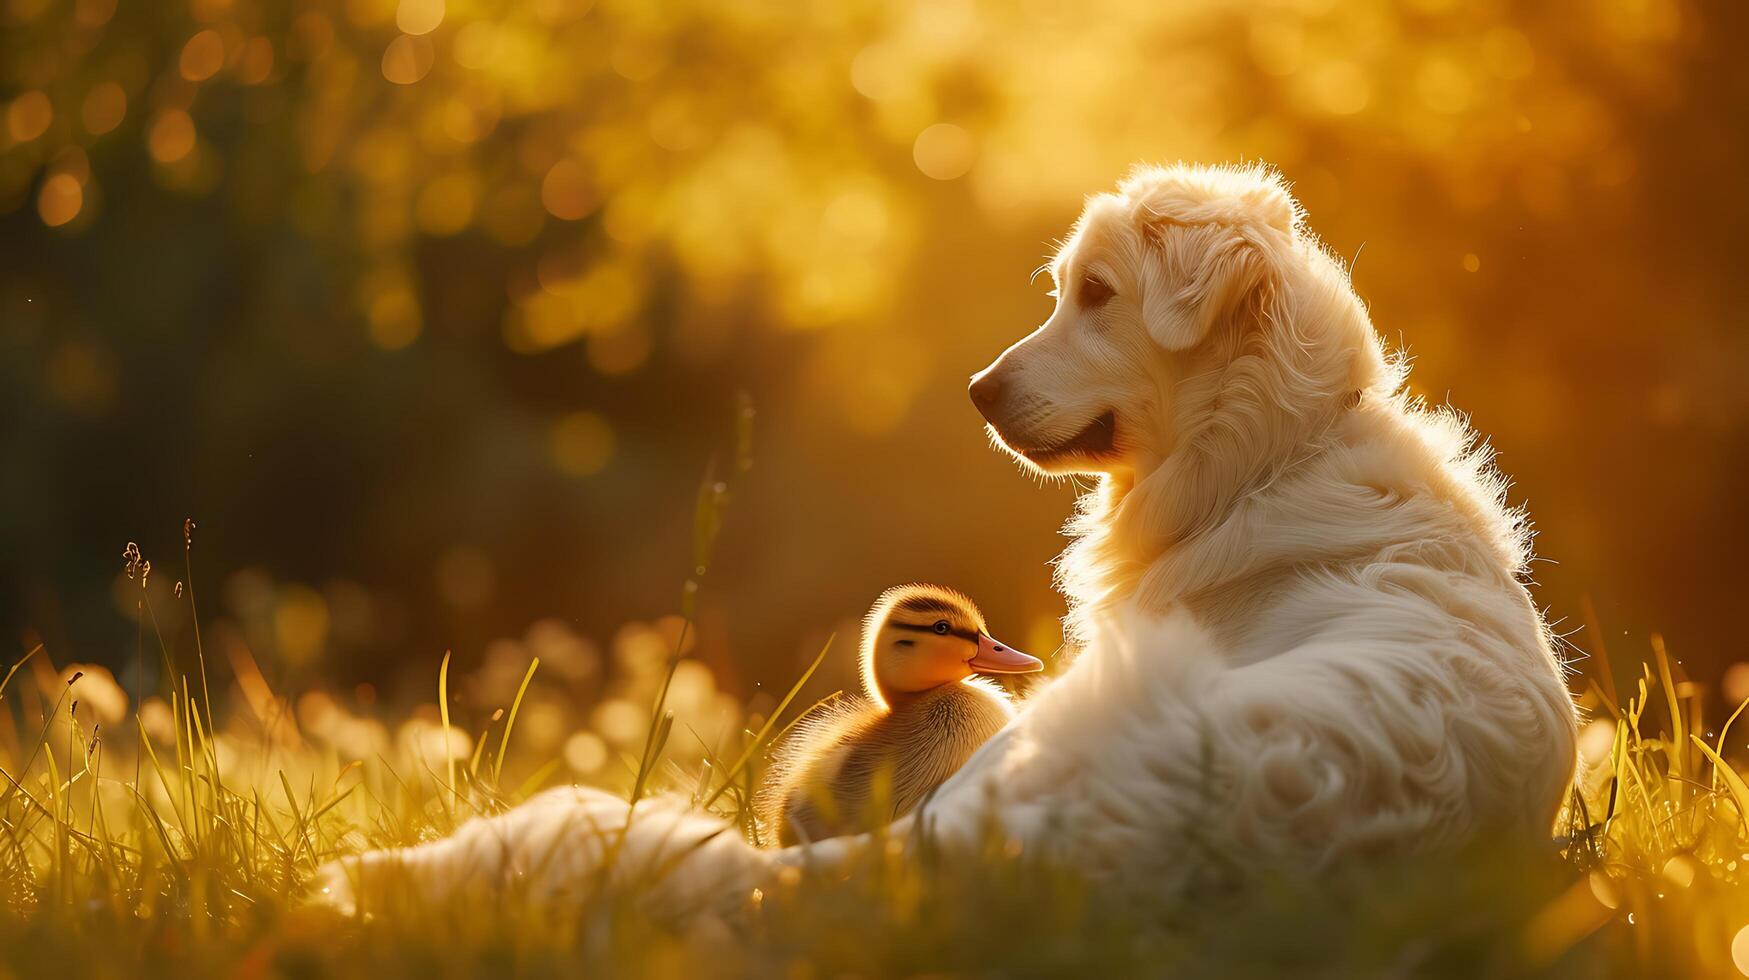 ai généré improbable duo une chien et canard embrasse dans prés chaud lumière mettant en valeur charmant camaraderie photo